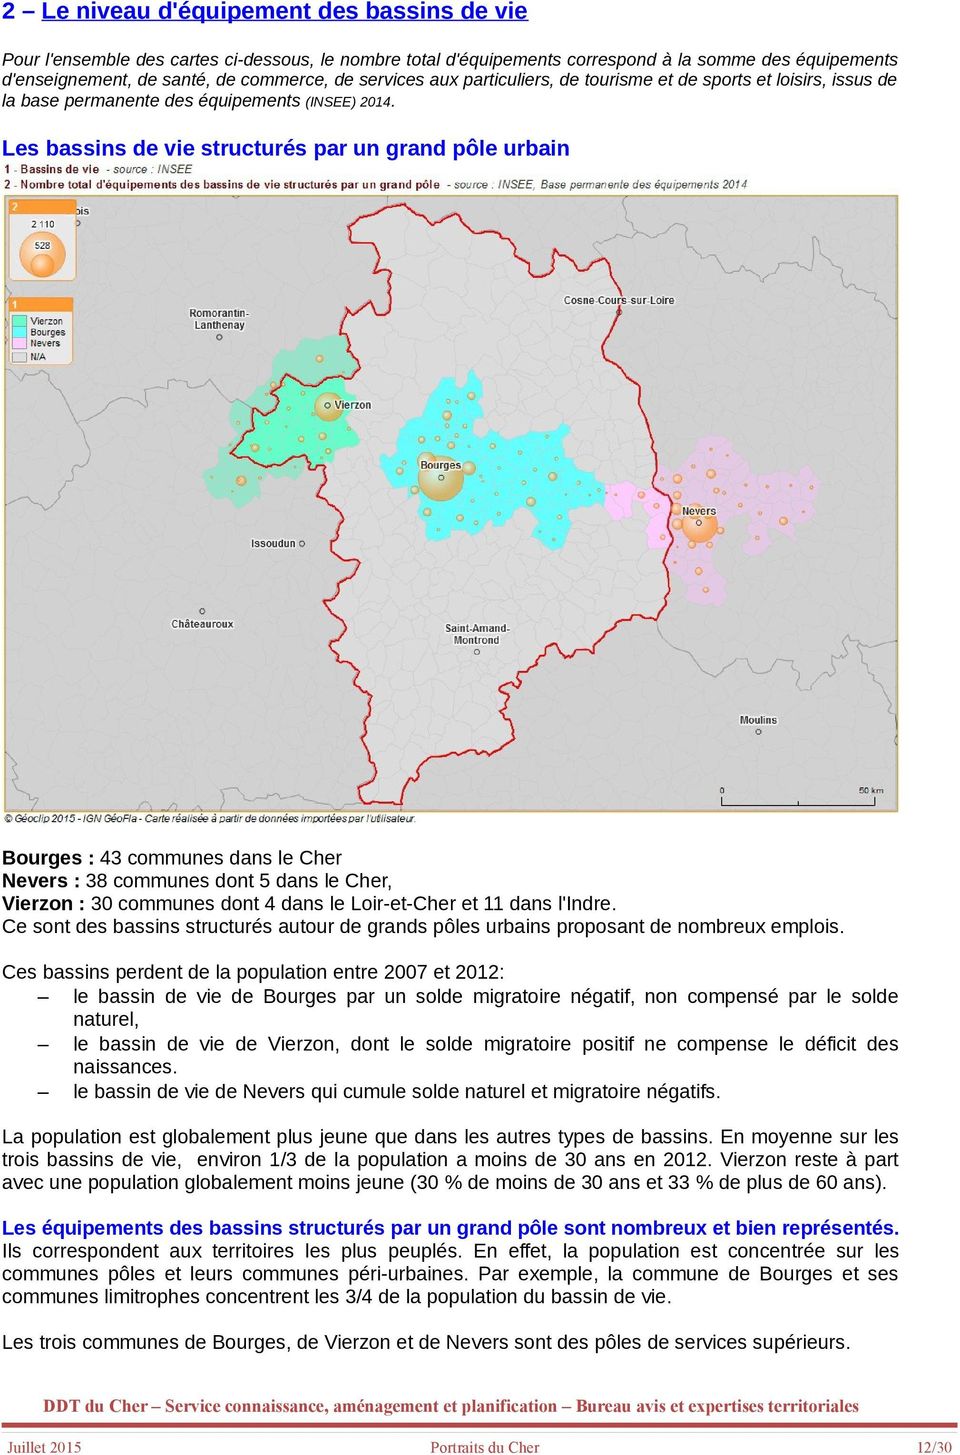 Les bassins de vie structurés par un grand pôle urbain Bourges : 43 communes dans le Cher Nevers : 38 communes dont 5 dans le Cher, Vierzon : 30 communes dont 4 dans le Loir-et-Cher et 11 dans